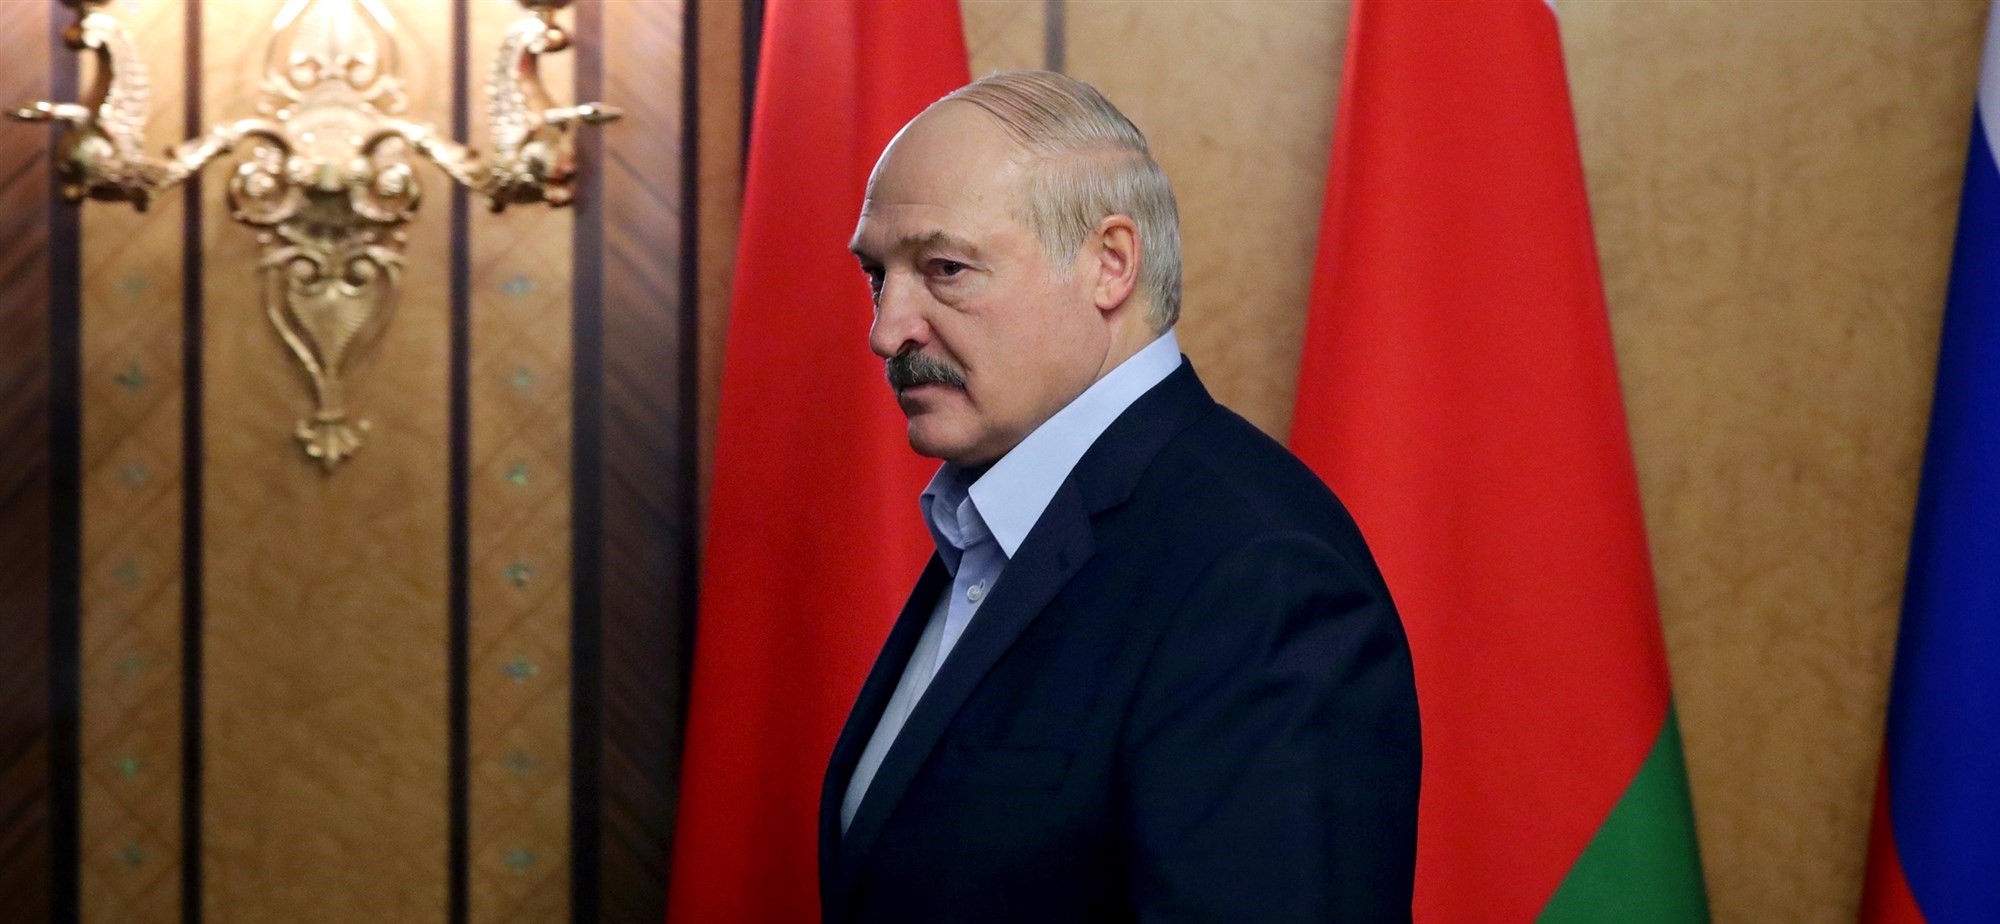 Αλεξάντερ Λουκασένκο: O πρόεδρος της Λευκορωσίας είχε κορωνοϊό αλλά θεραπεύθηκε χωρίς να παρουσιάσει συμπτώματα